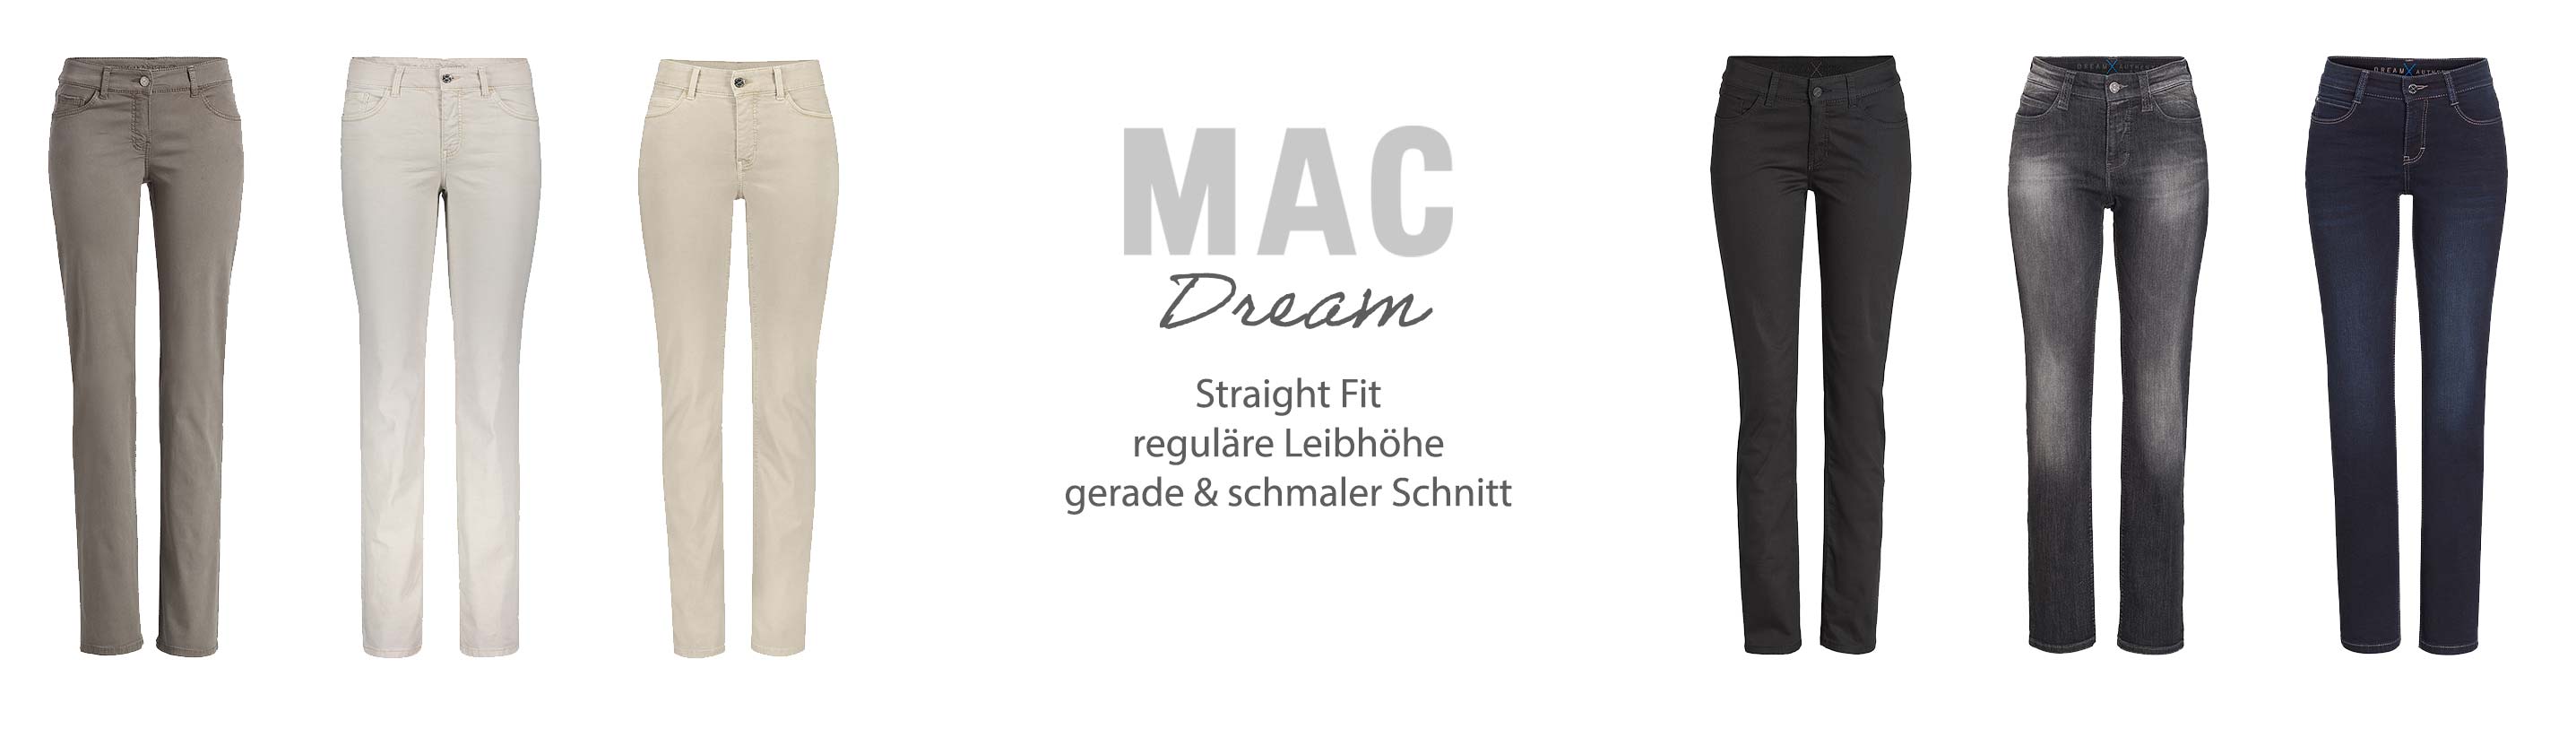 MAC Jeans Dream